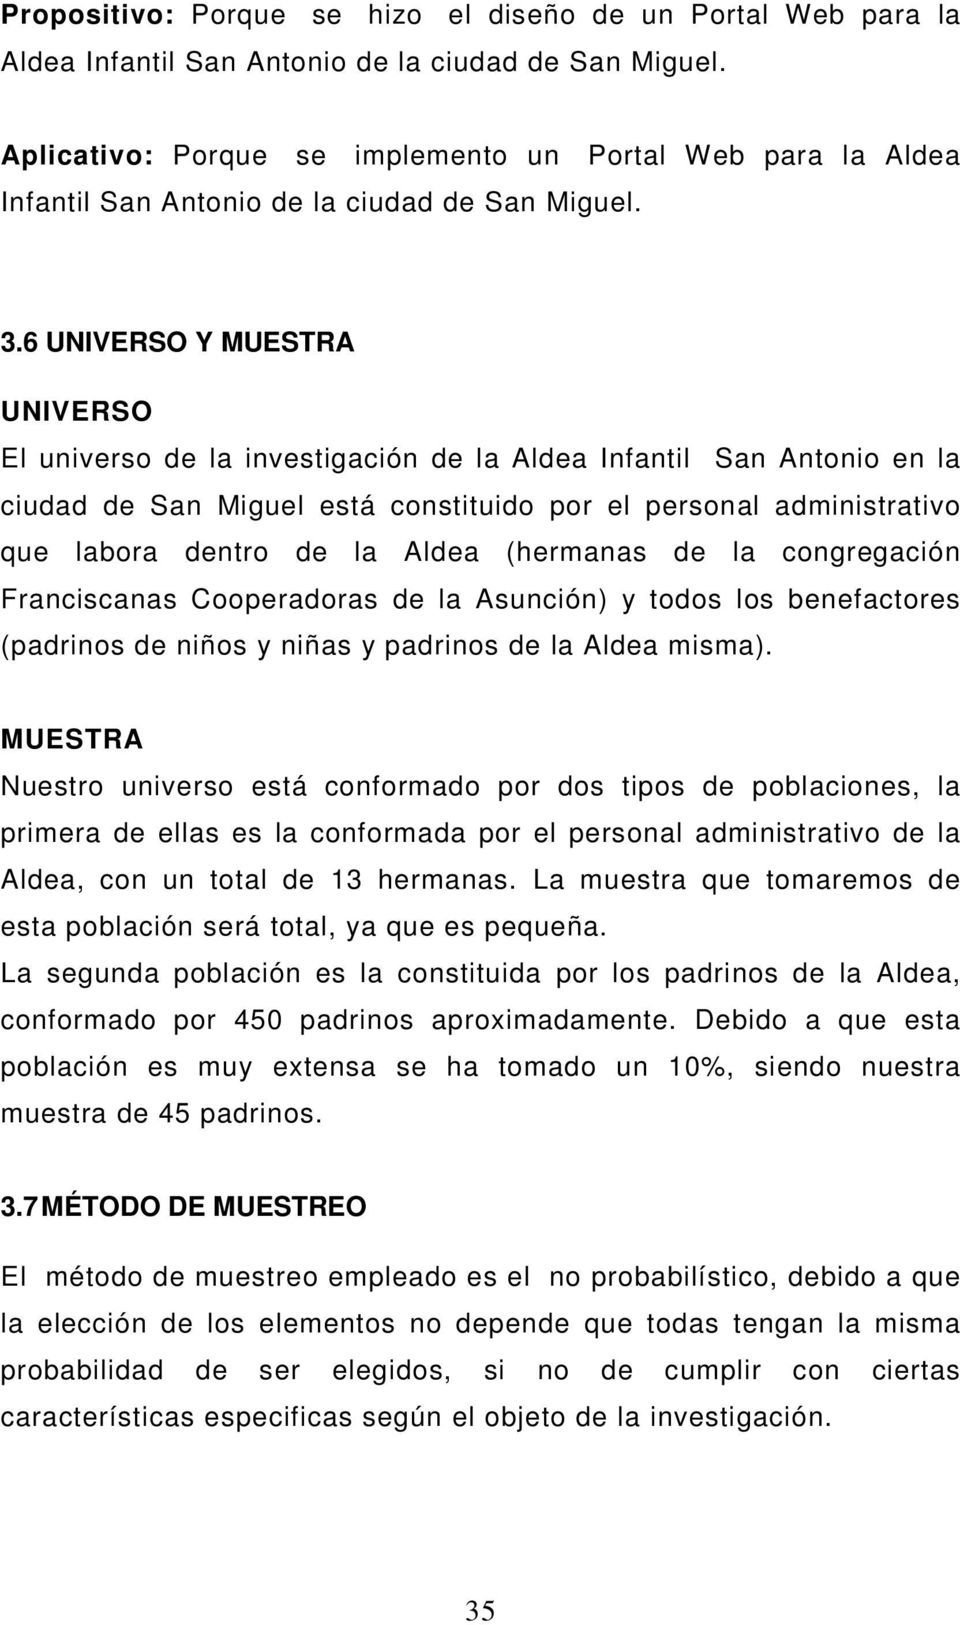 6 UNIVERSO Y MUESTRA UNIVERSO El universo de la investigación de la Aldea Infantil San Antonio en la ciudad de San Miguel está constituido por el personal administrativo que labora dentro de la Aldea